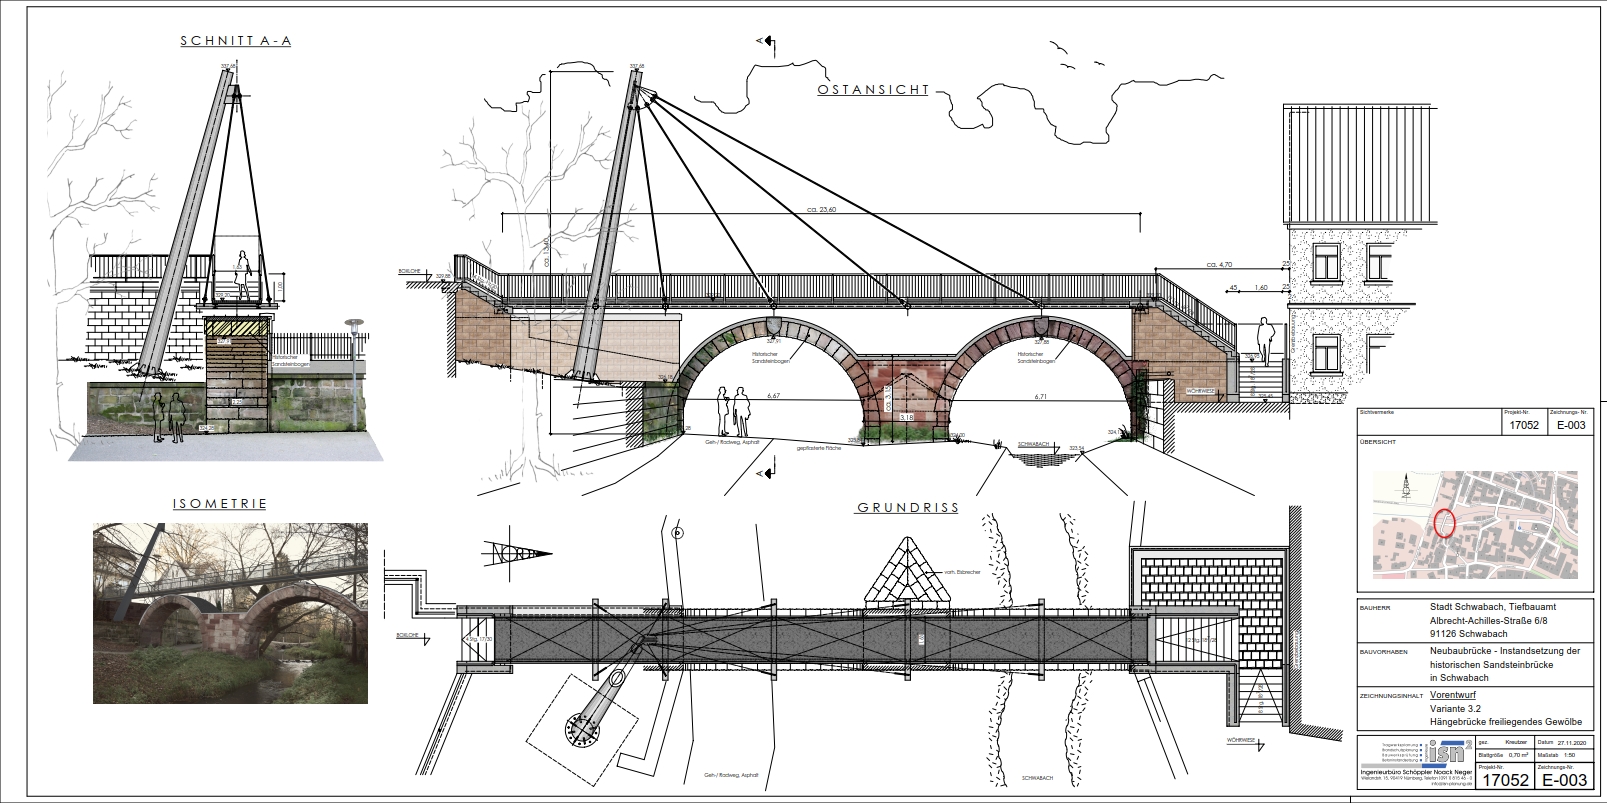 Entwurf 02: Hängebrücke und freiliegendes Gewölbe